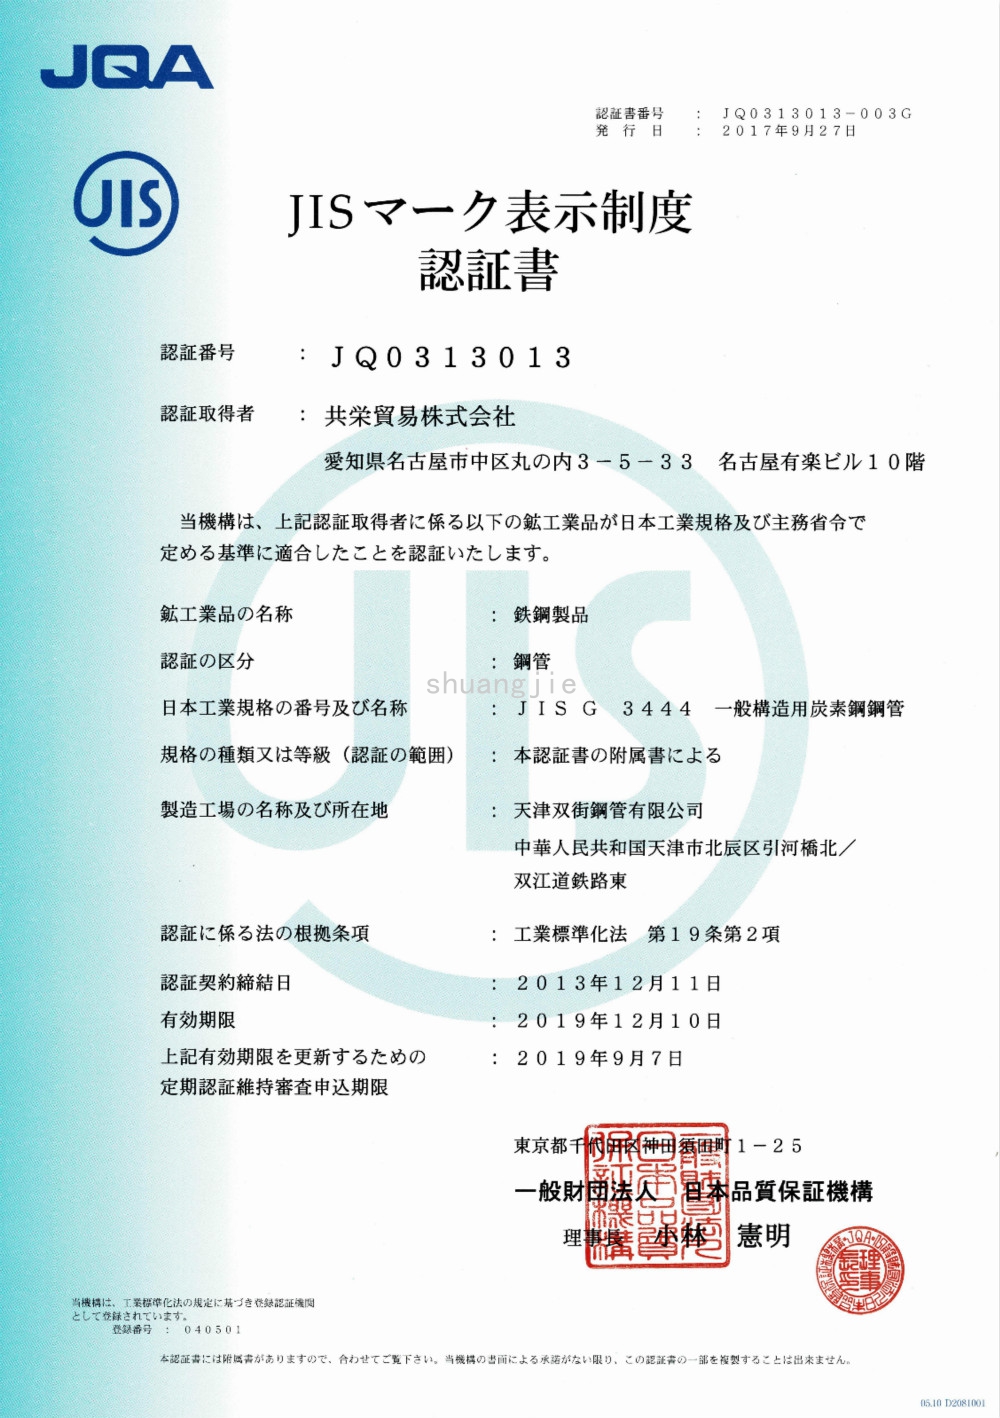 JIS Certificate - P1